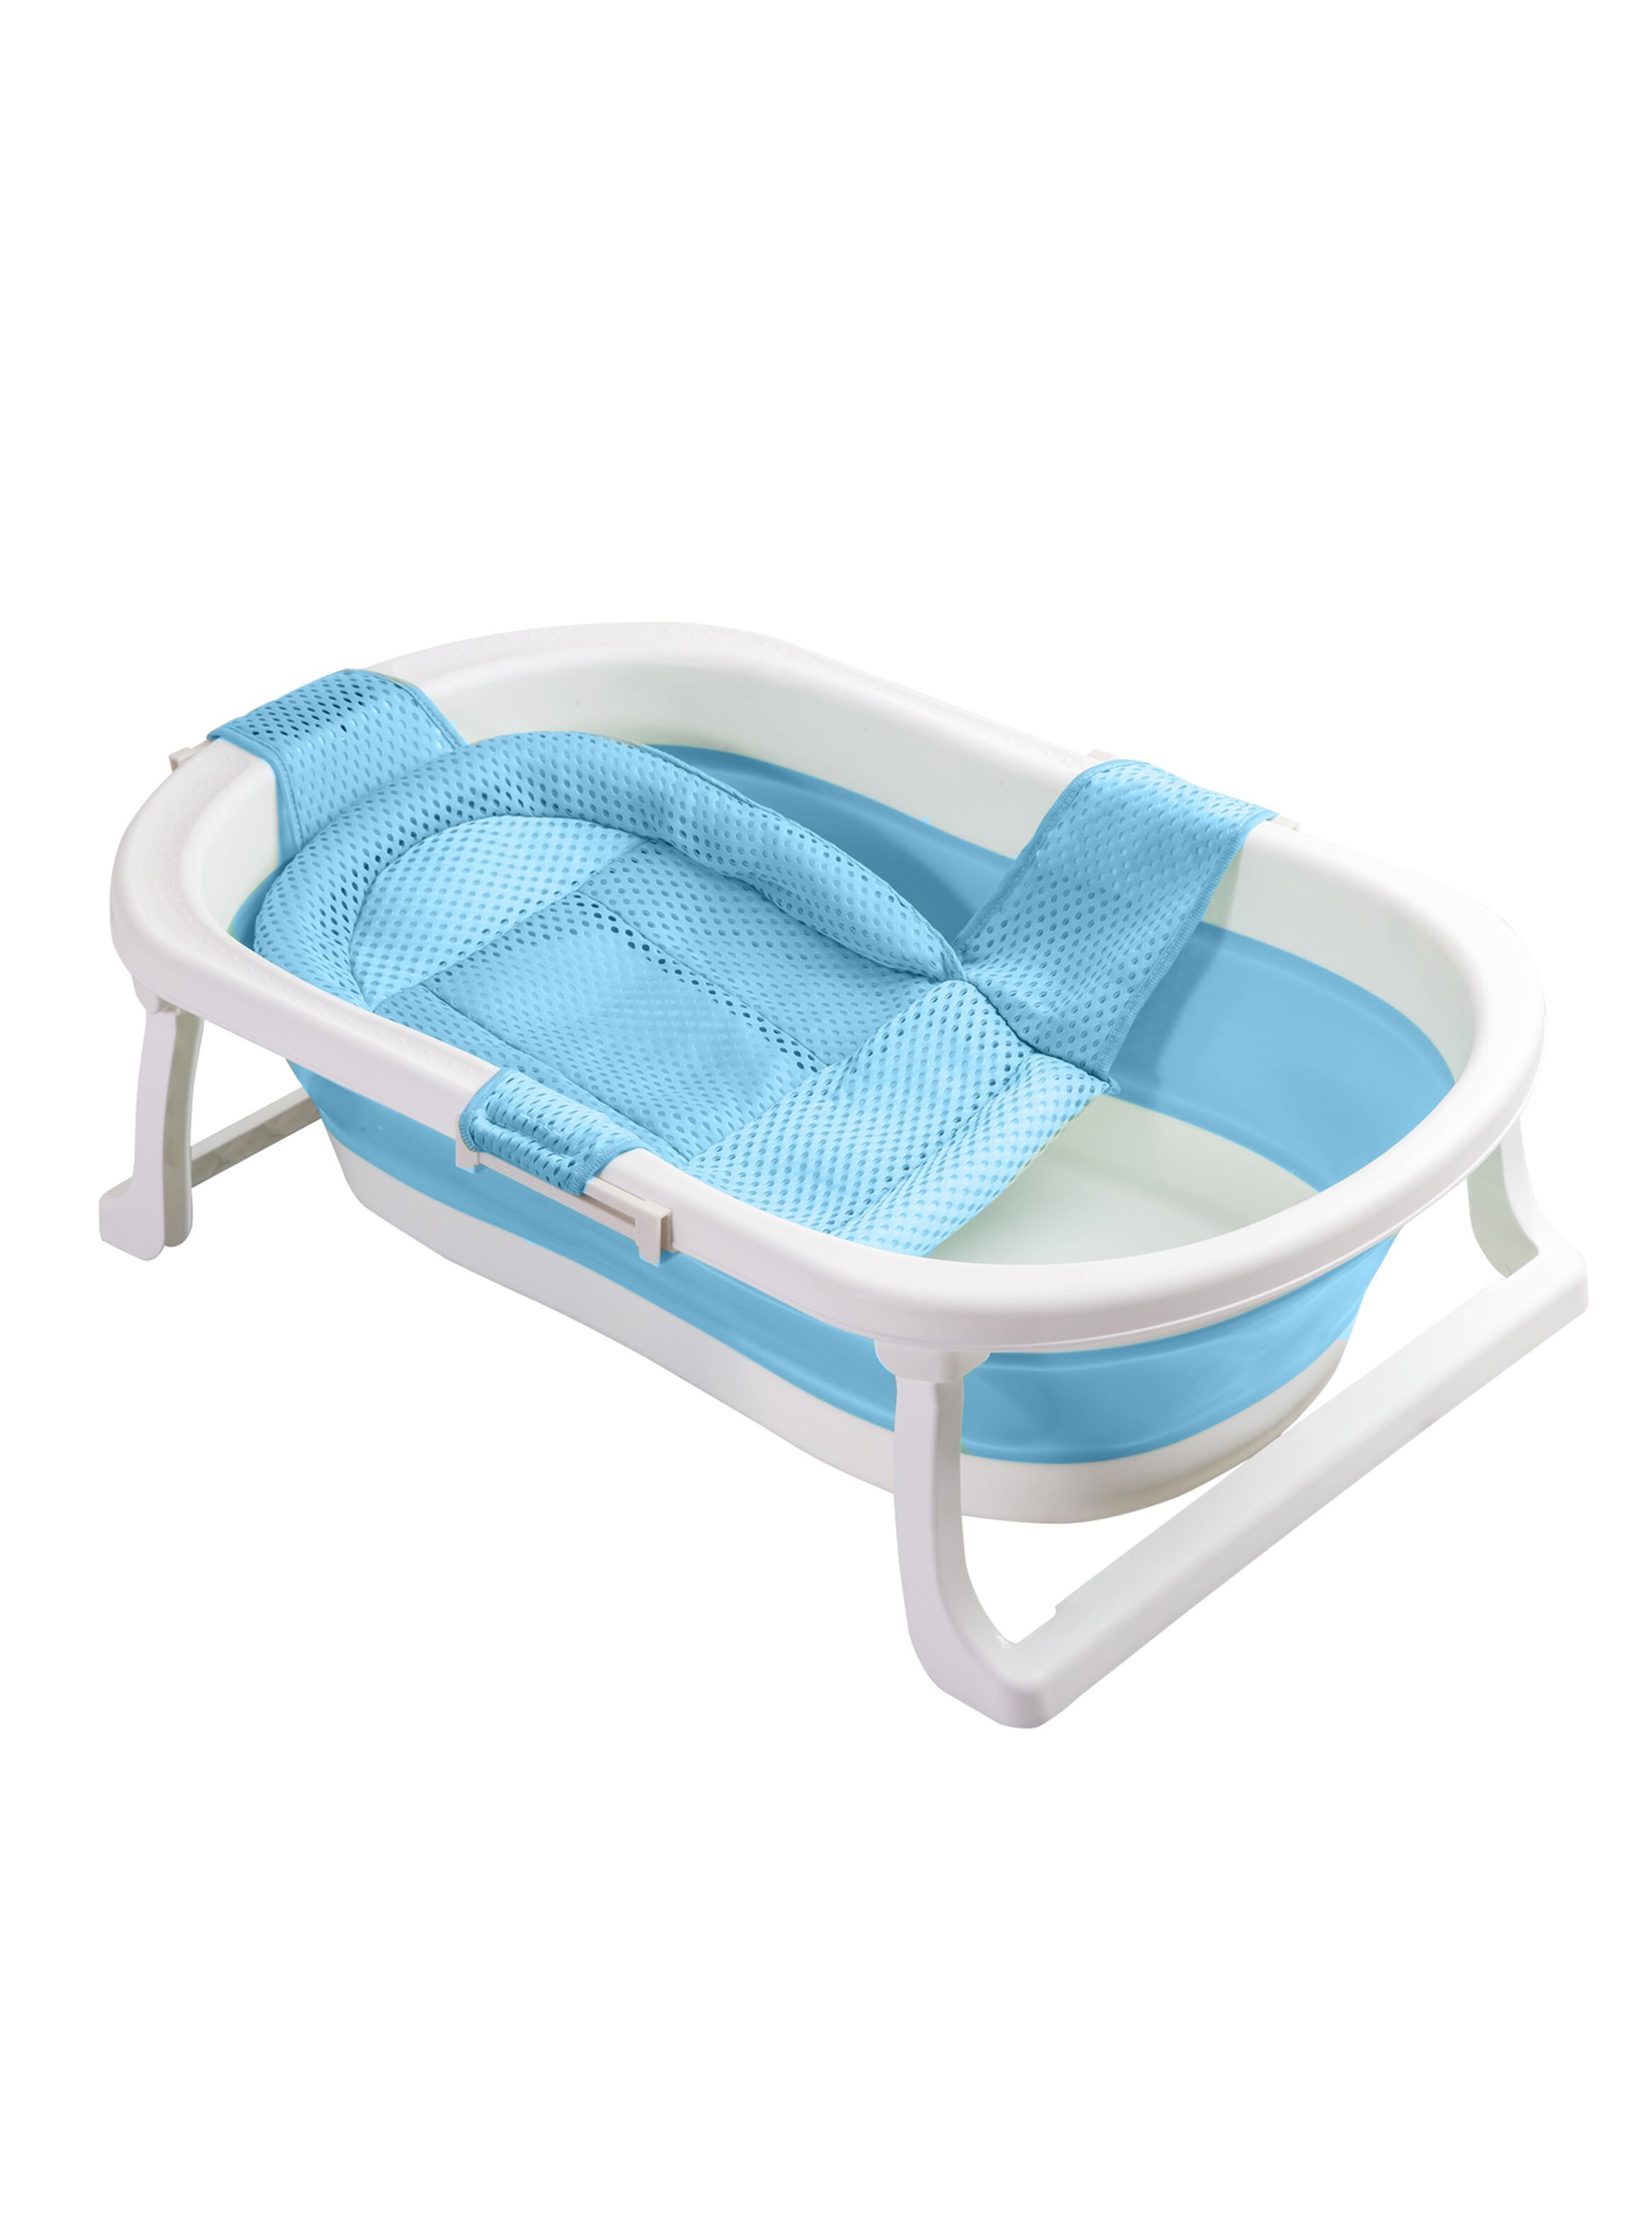 Bañera Hamaca Azul - Higiene y Cuidado del Bebé